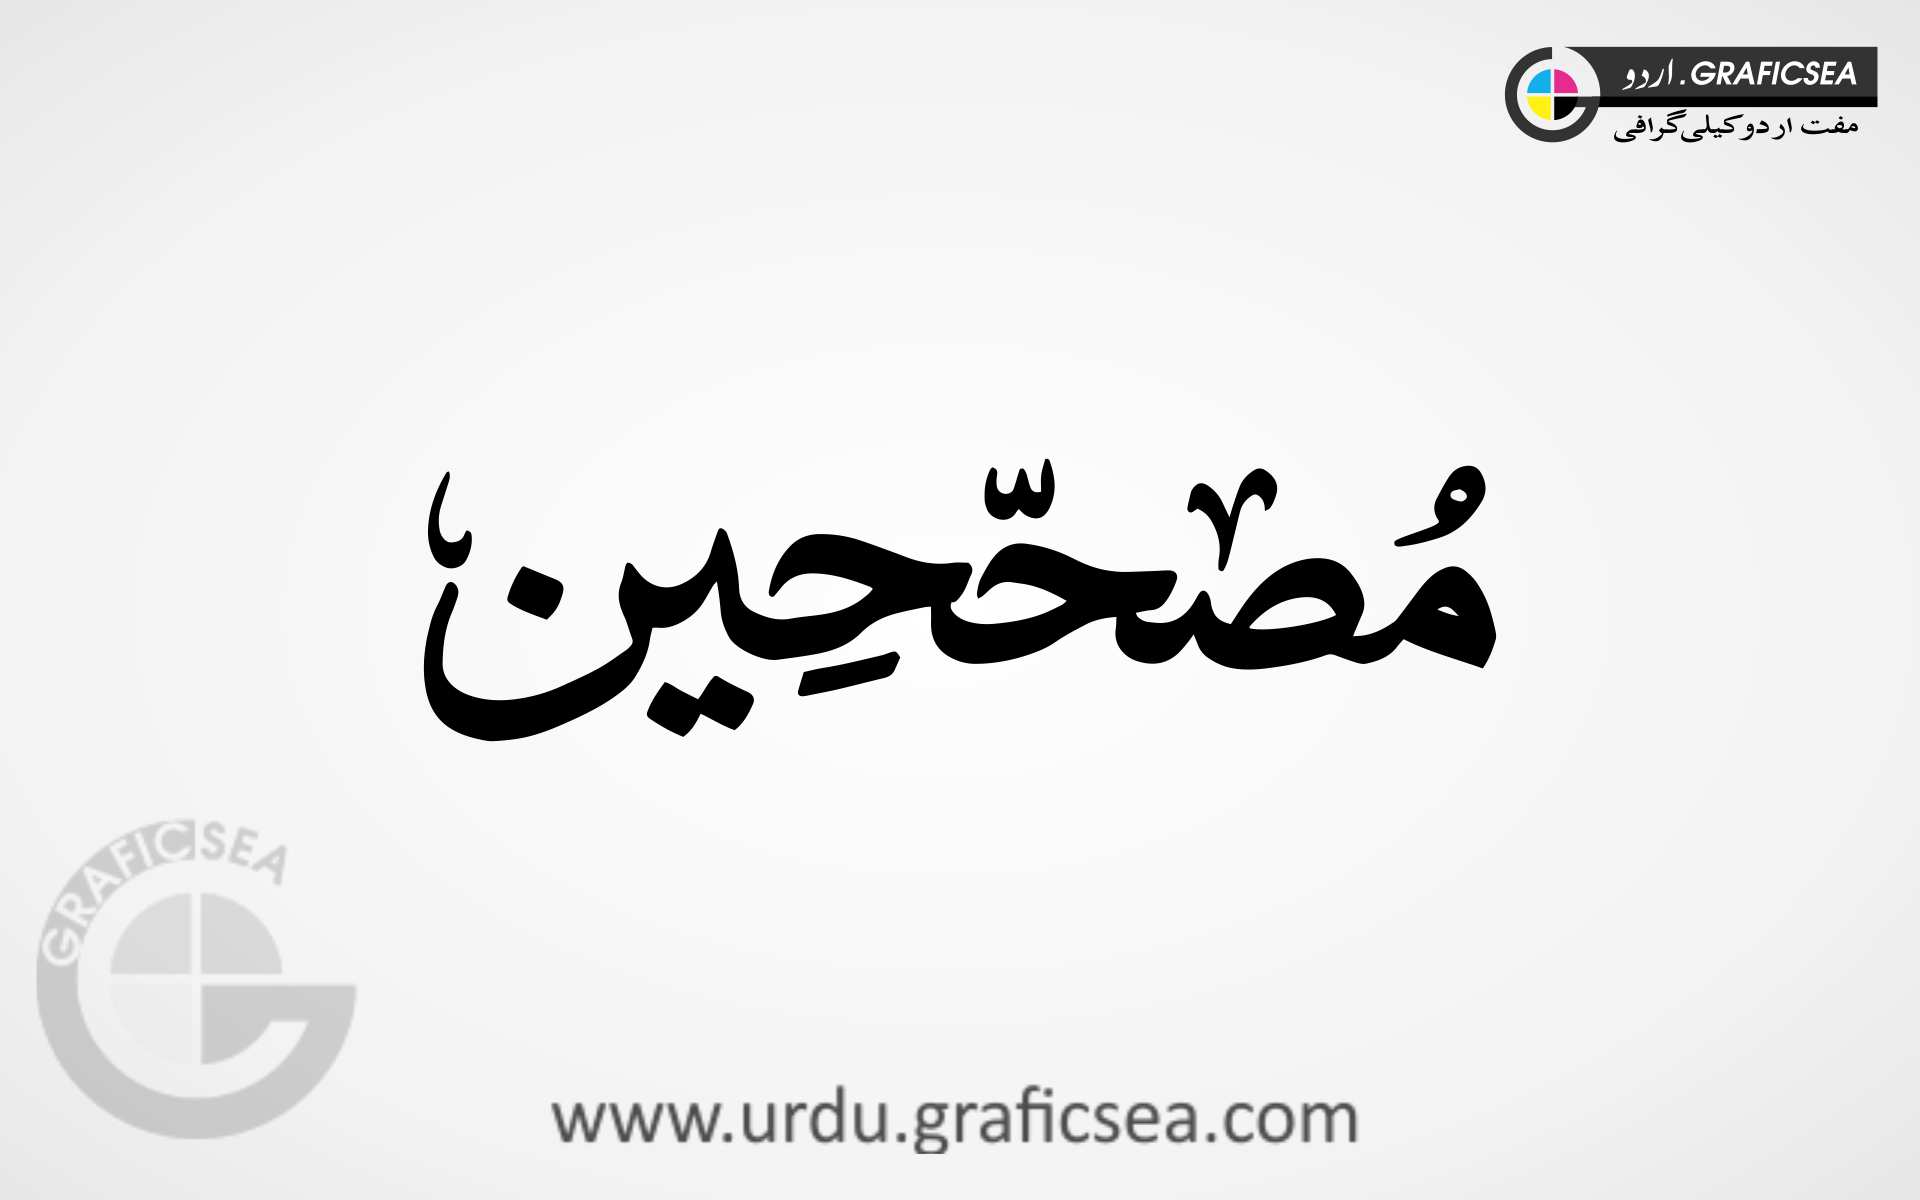 Mosahayeen, Writers Word Urdu Calligraphy